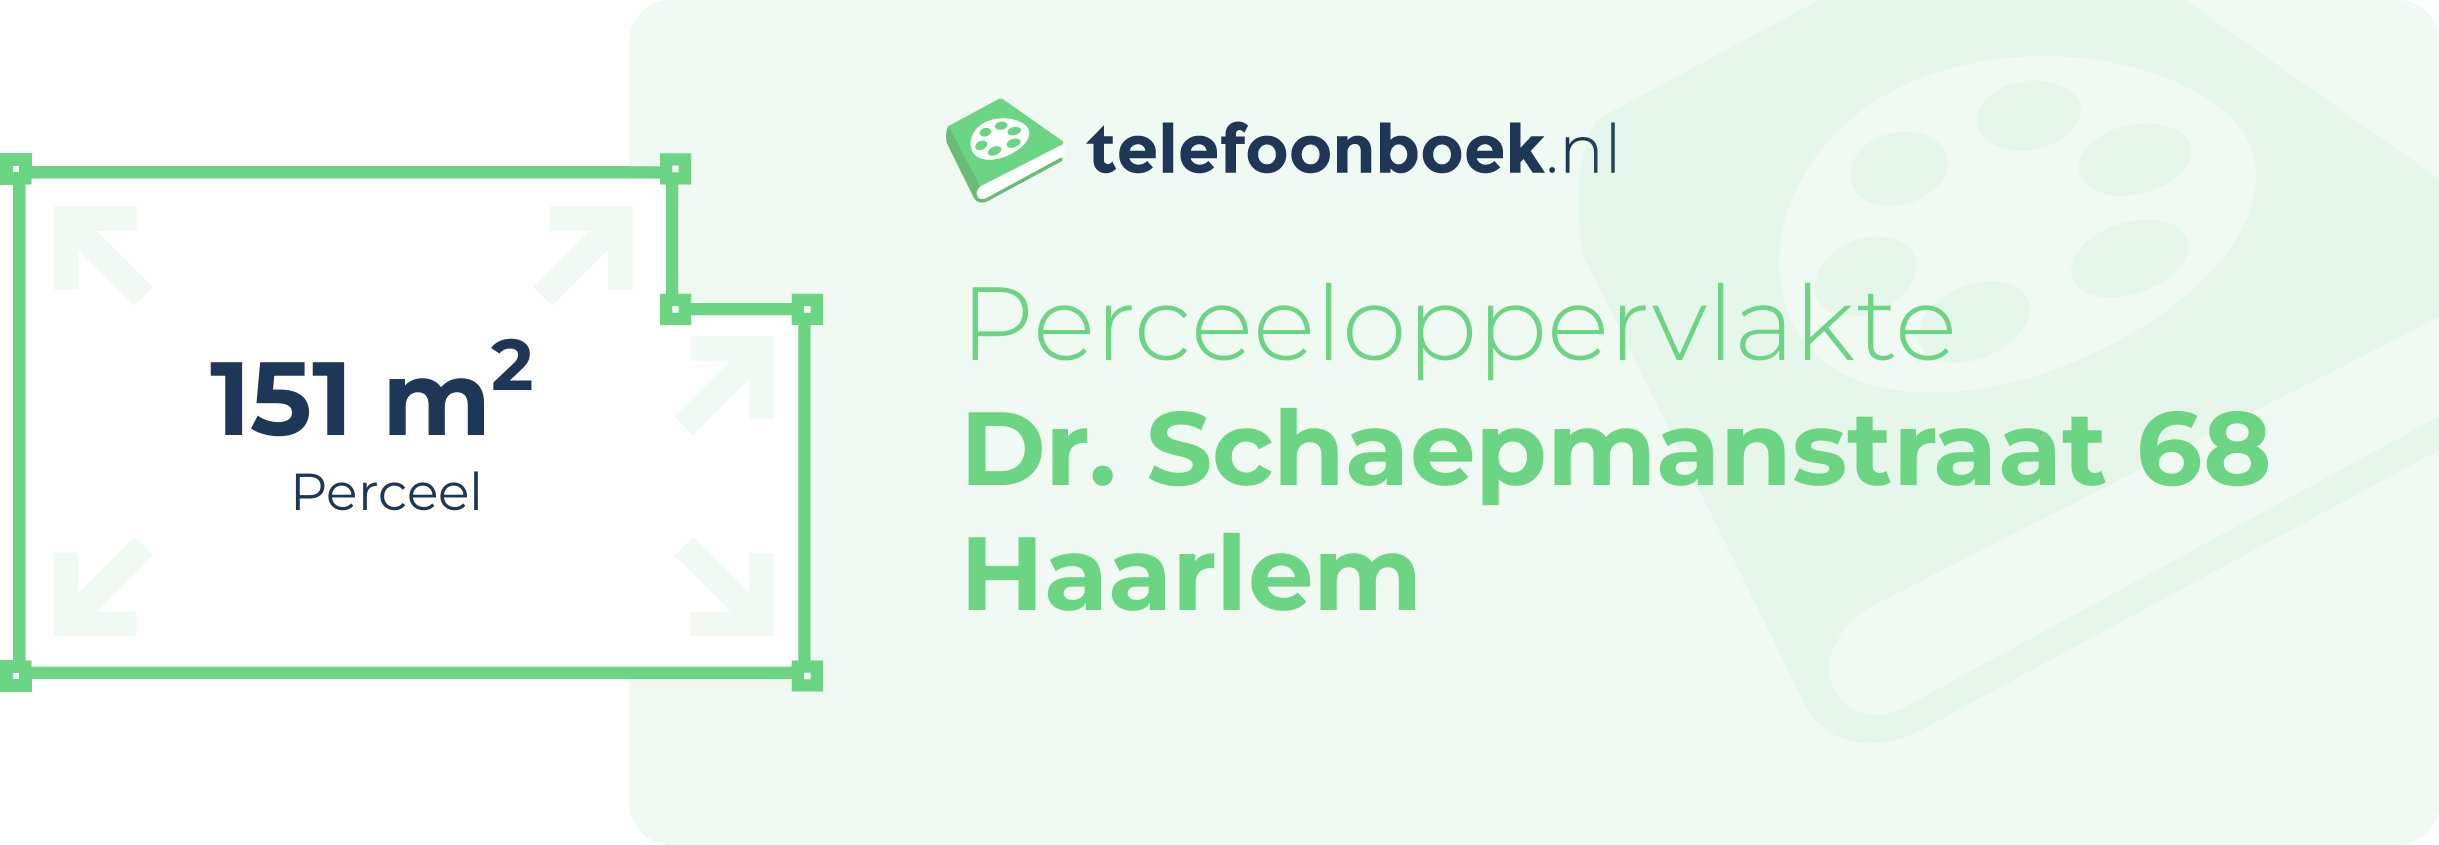 Perceeloppervlakte Dr. Schaepmanstraat 68 Haarlem